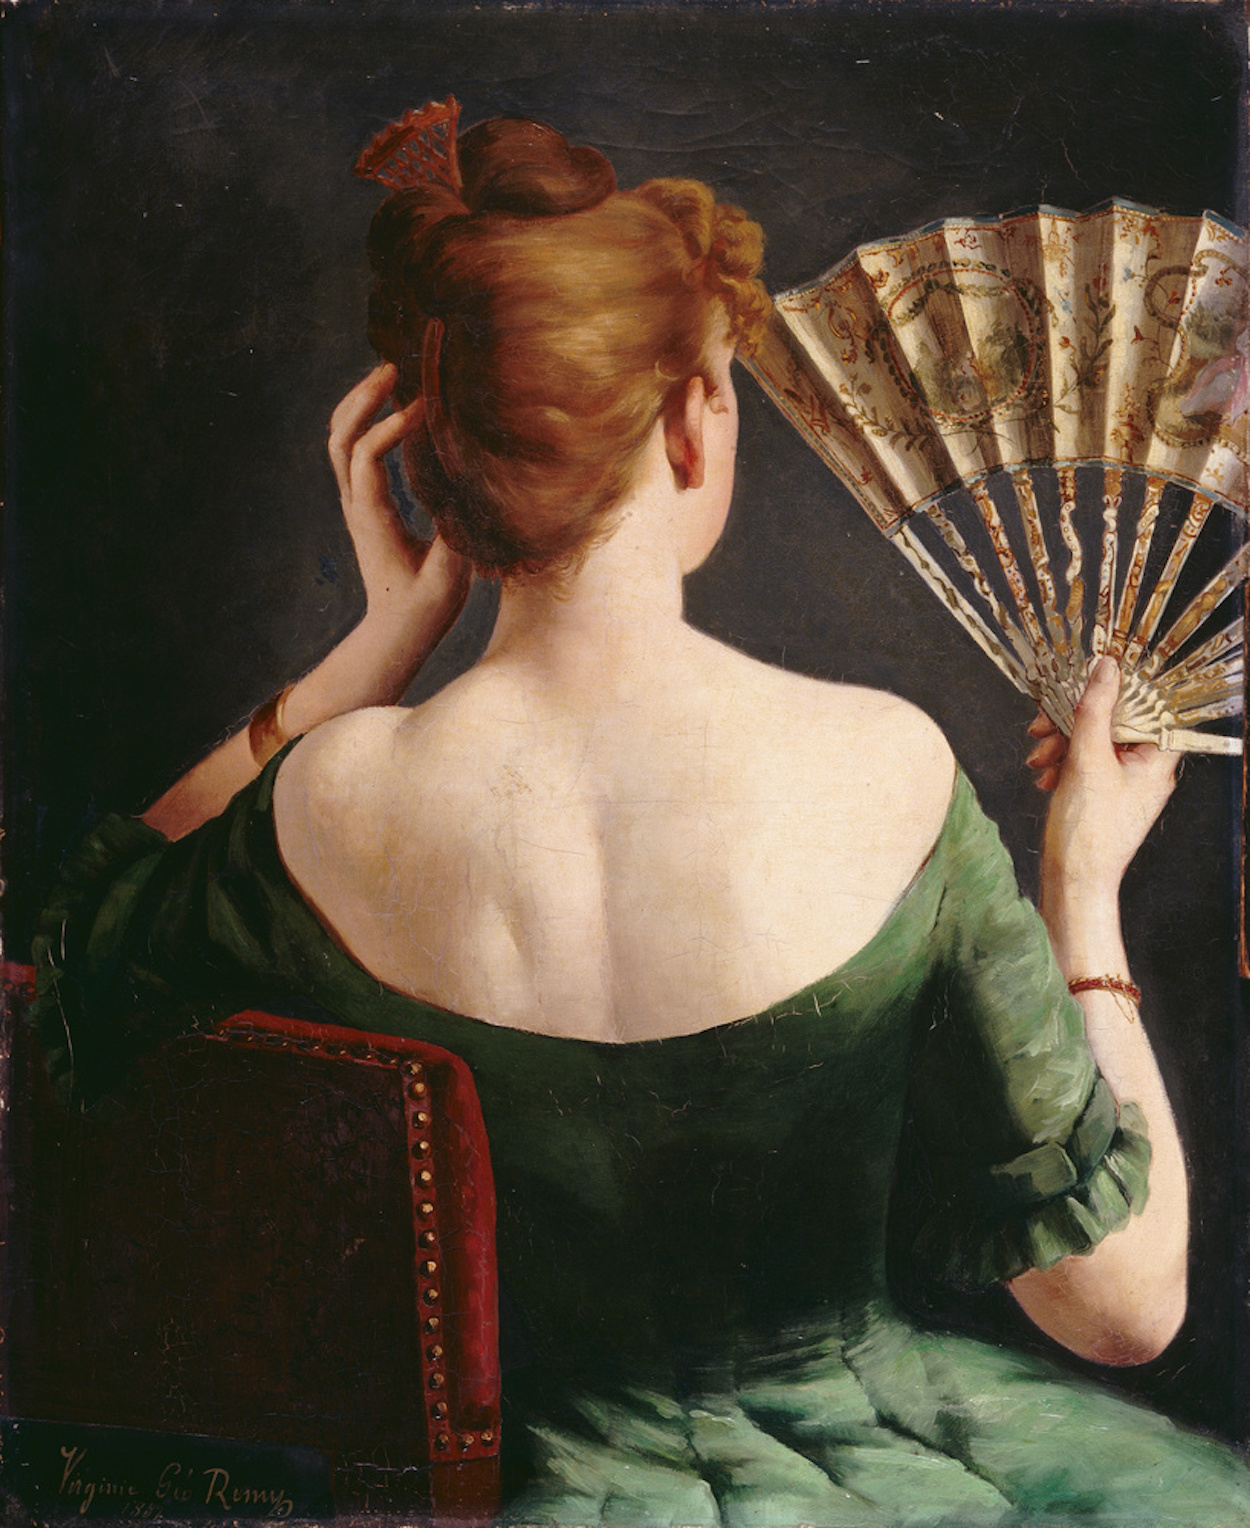 奶奶的扇子 by 维吉妮 热罗·雷米 - 1887 - 72 x 59 cm 南特美術館